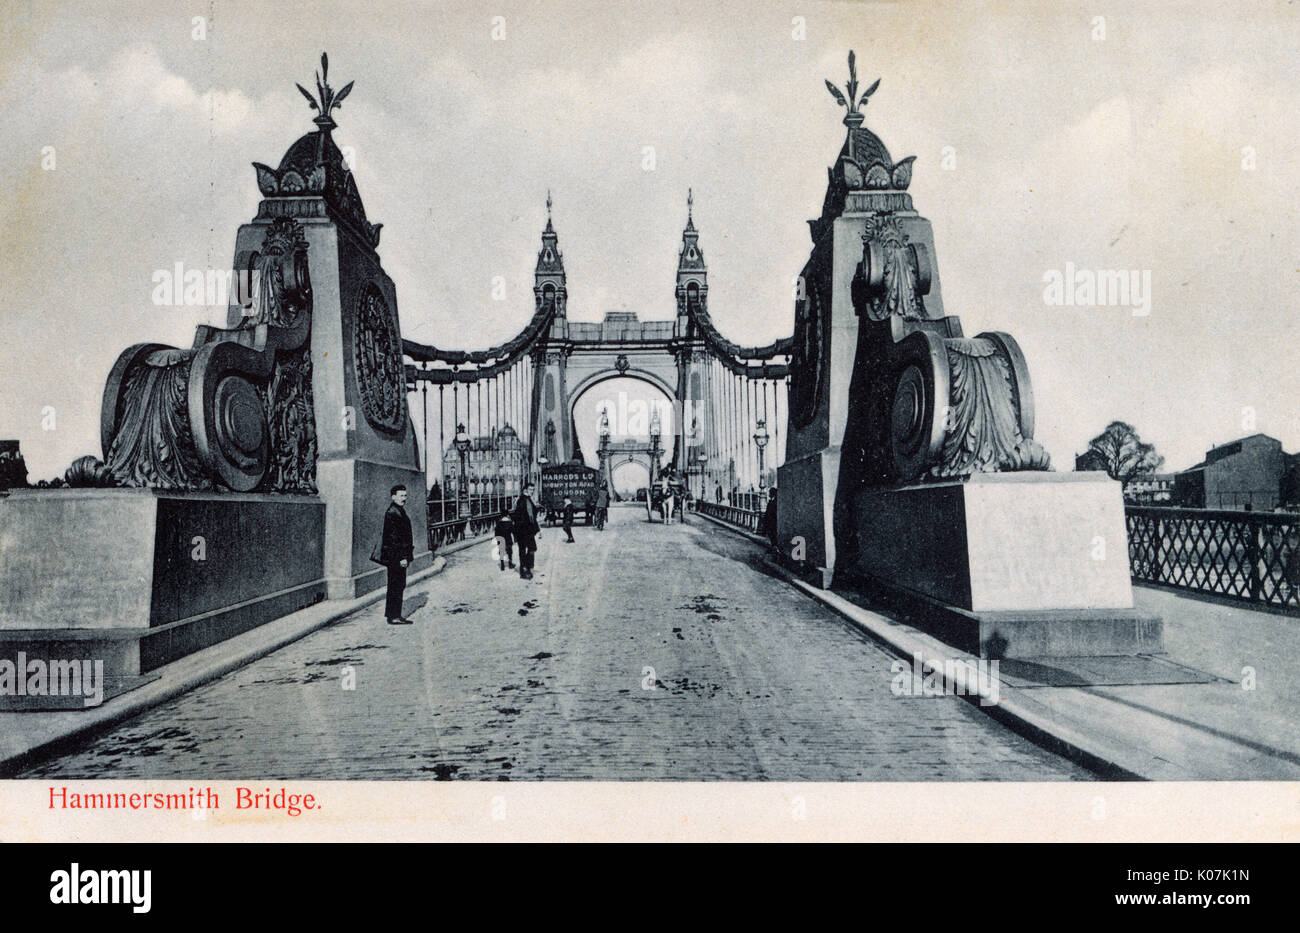 Hammersmith Bridge sur la Tamise, à l'ouest de Londres - note le cheval van livraison Harrods - conçu par le célèbre ingénieur civil sir Joseph Bazalgette. Date : vers 1904 Banque D'Images